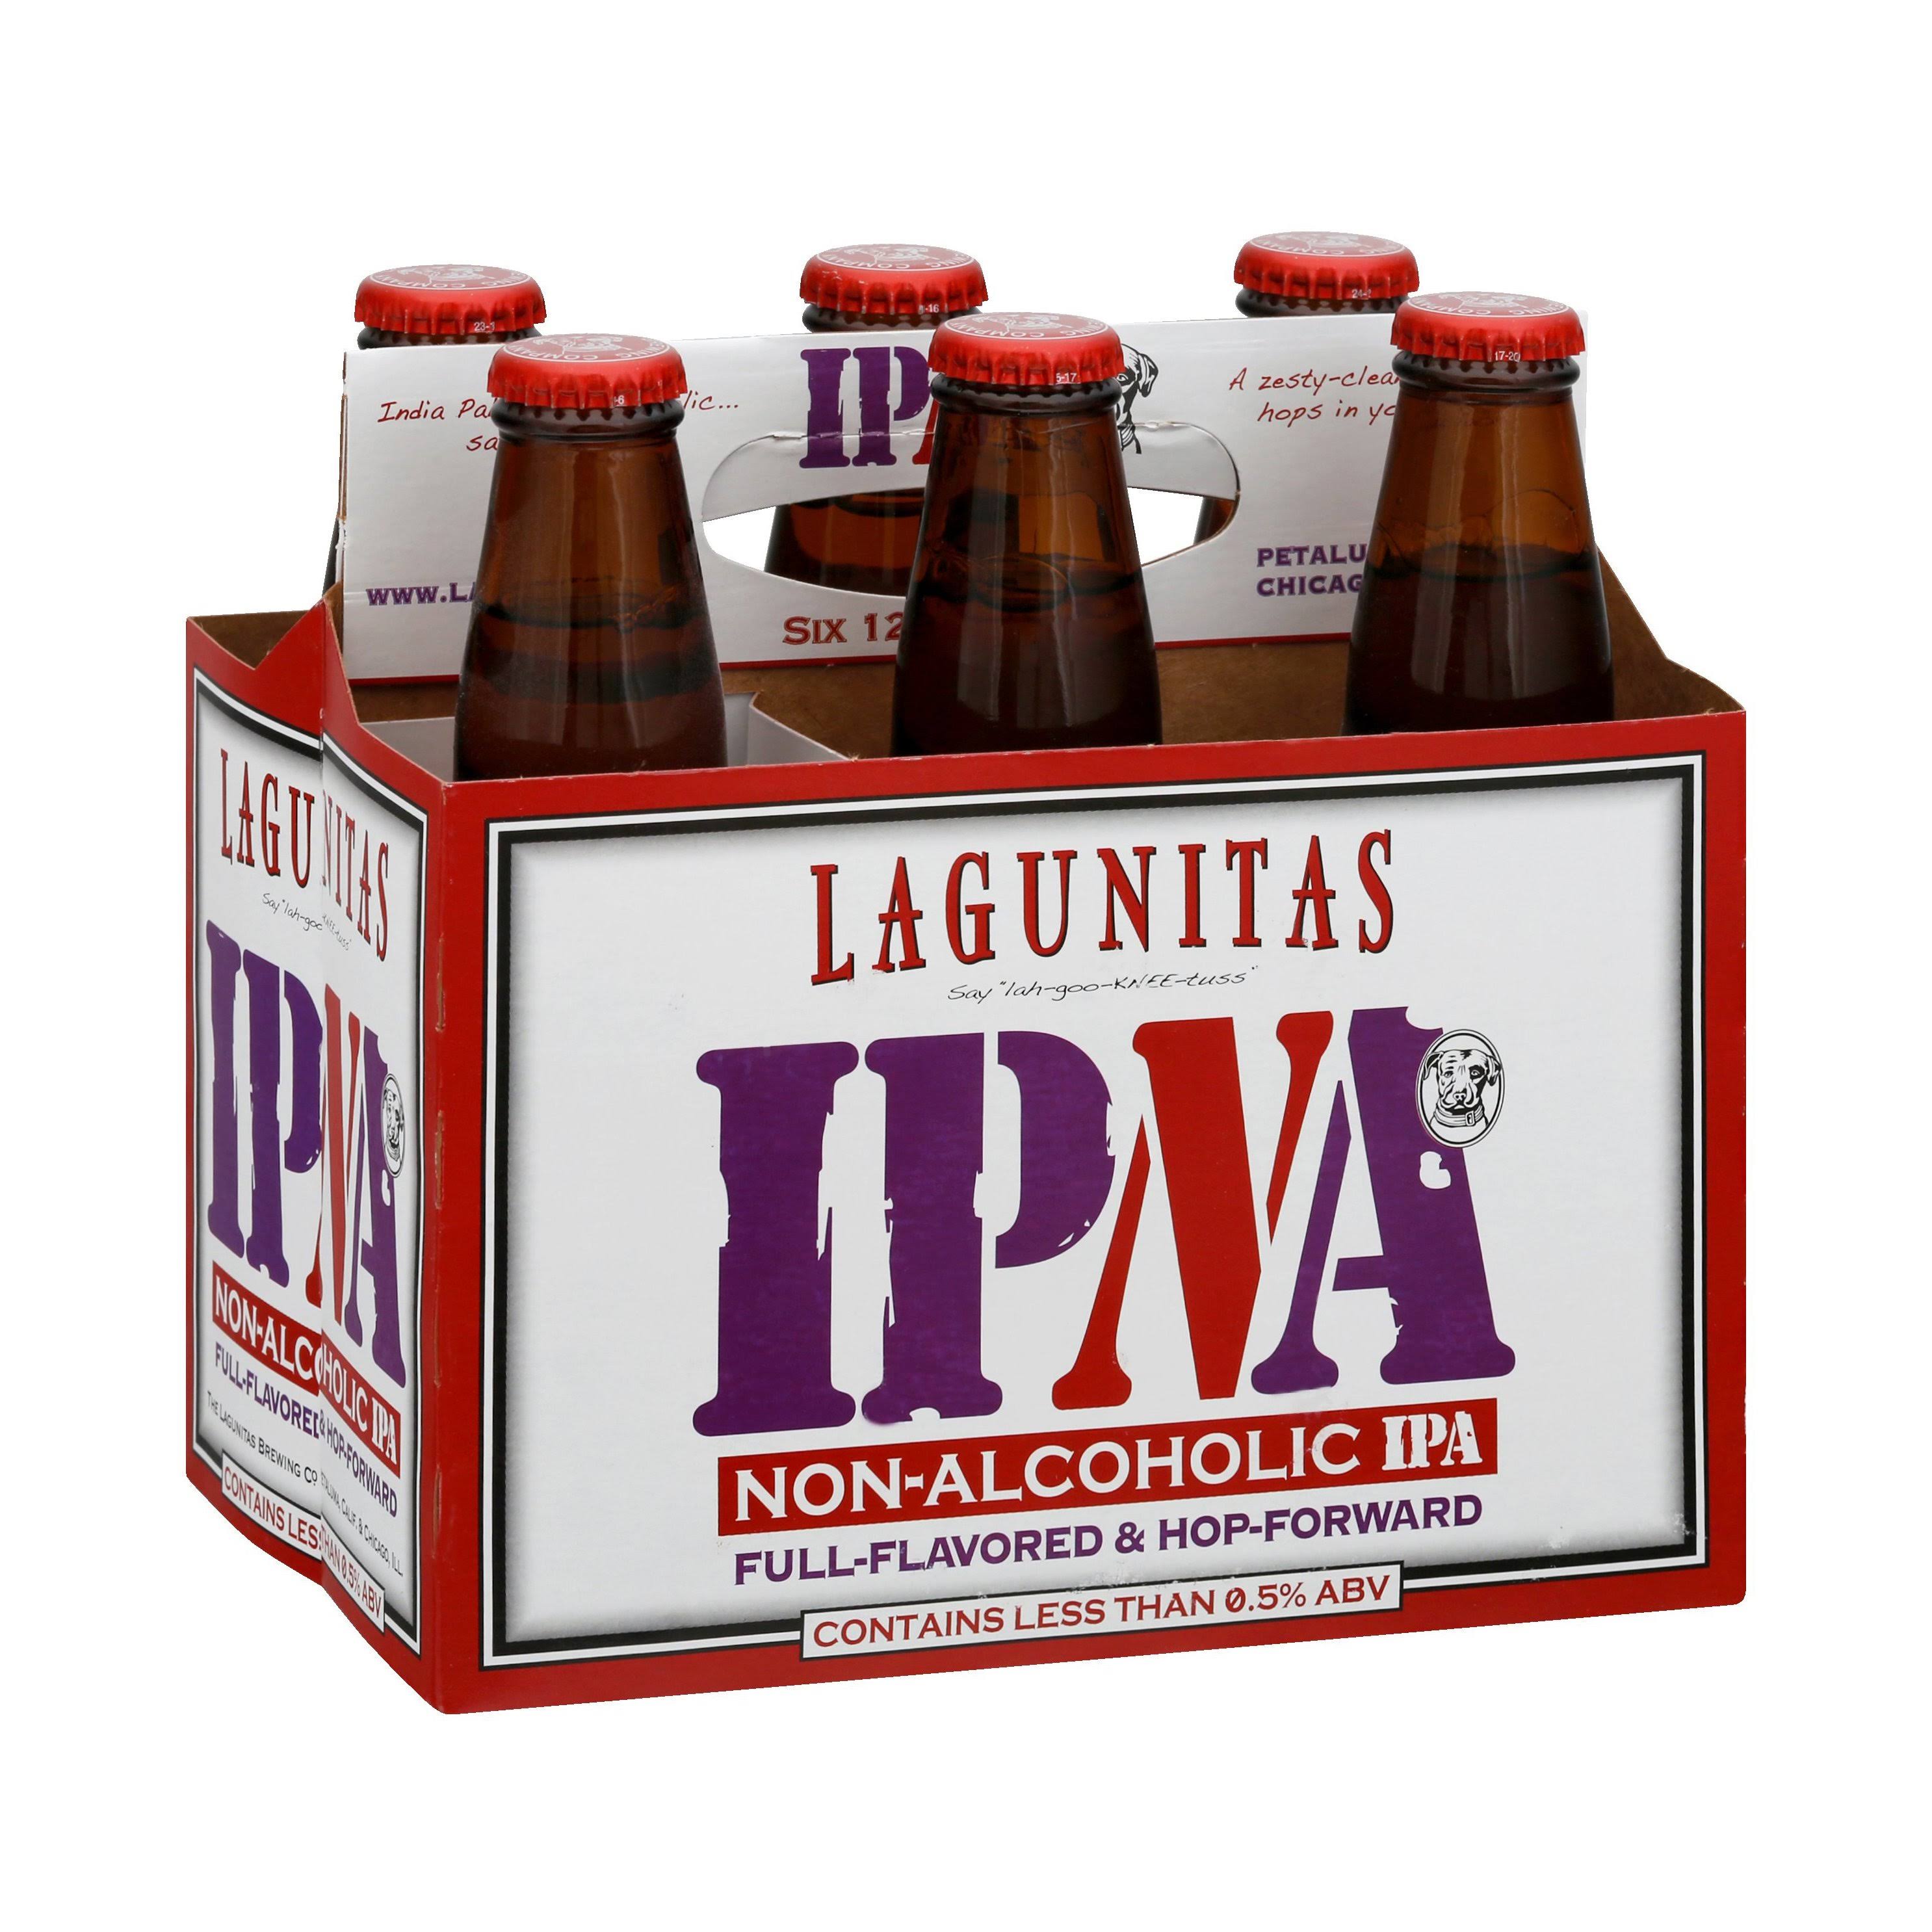 Lagunitas Beer, IPA, Non-Alcoholic - 6 pack, 12 oz bottles